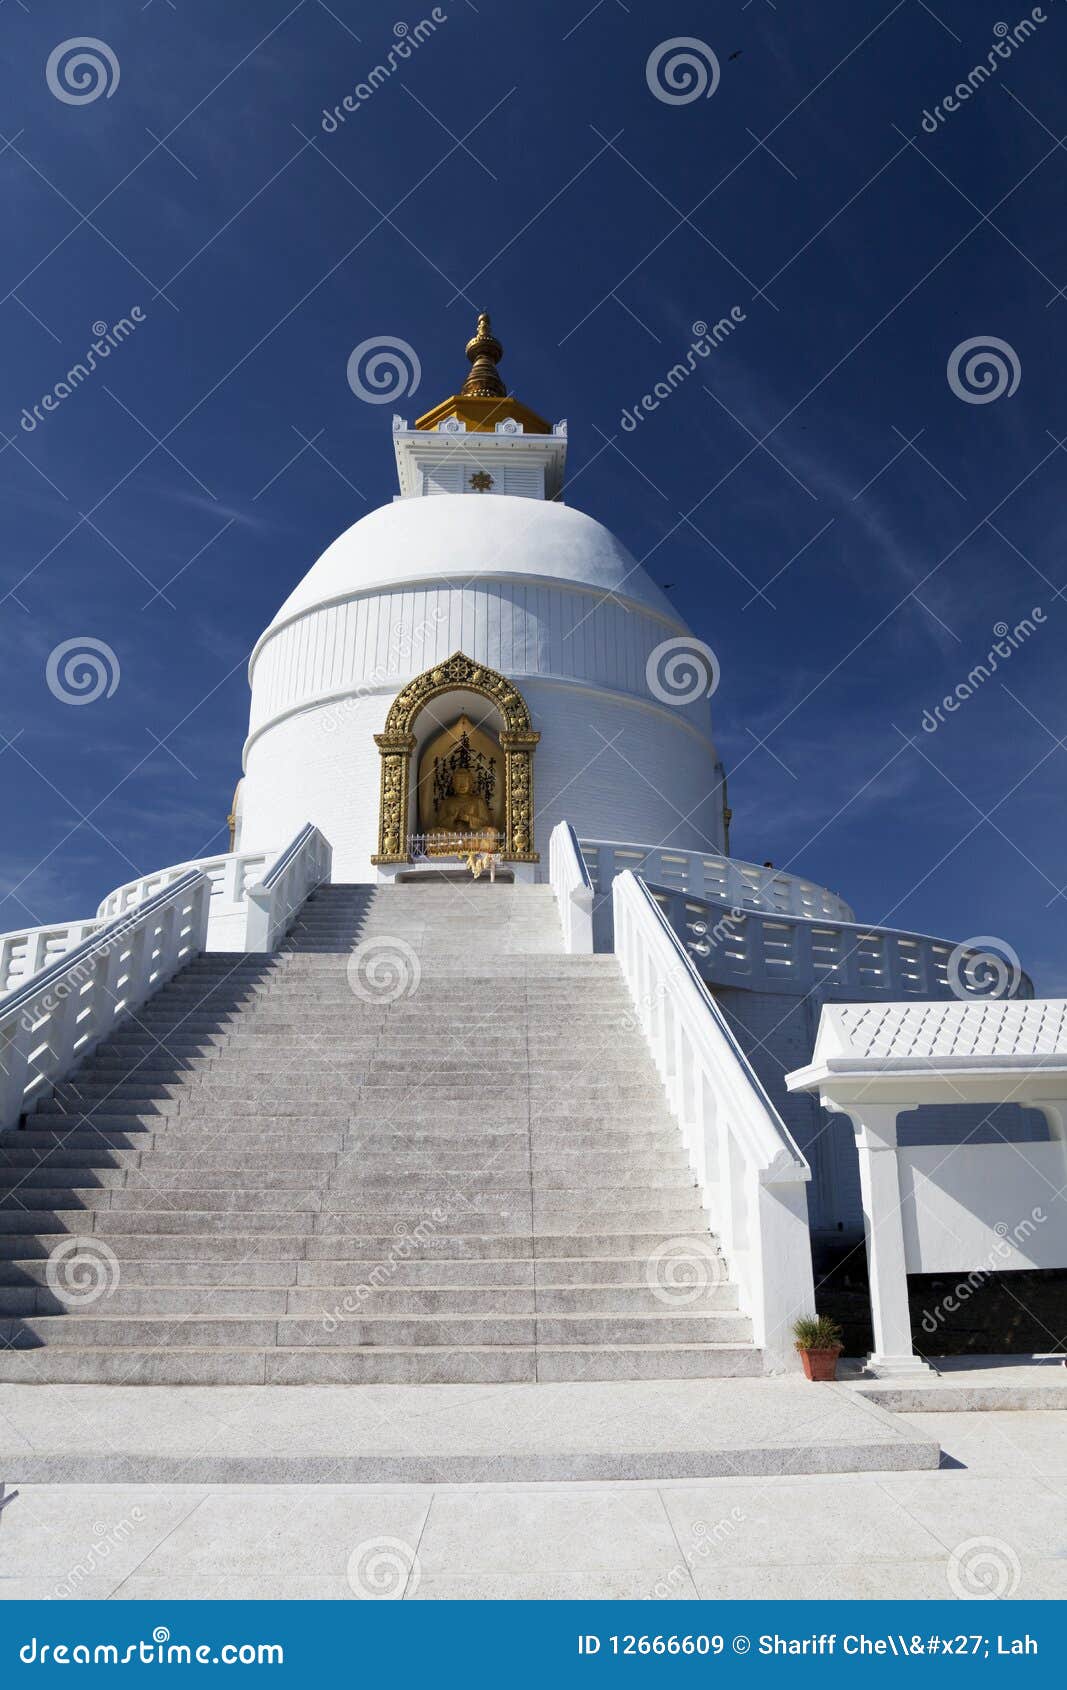 world peace stupa, pokhara, nepal